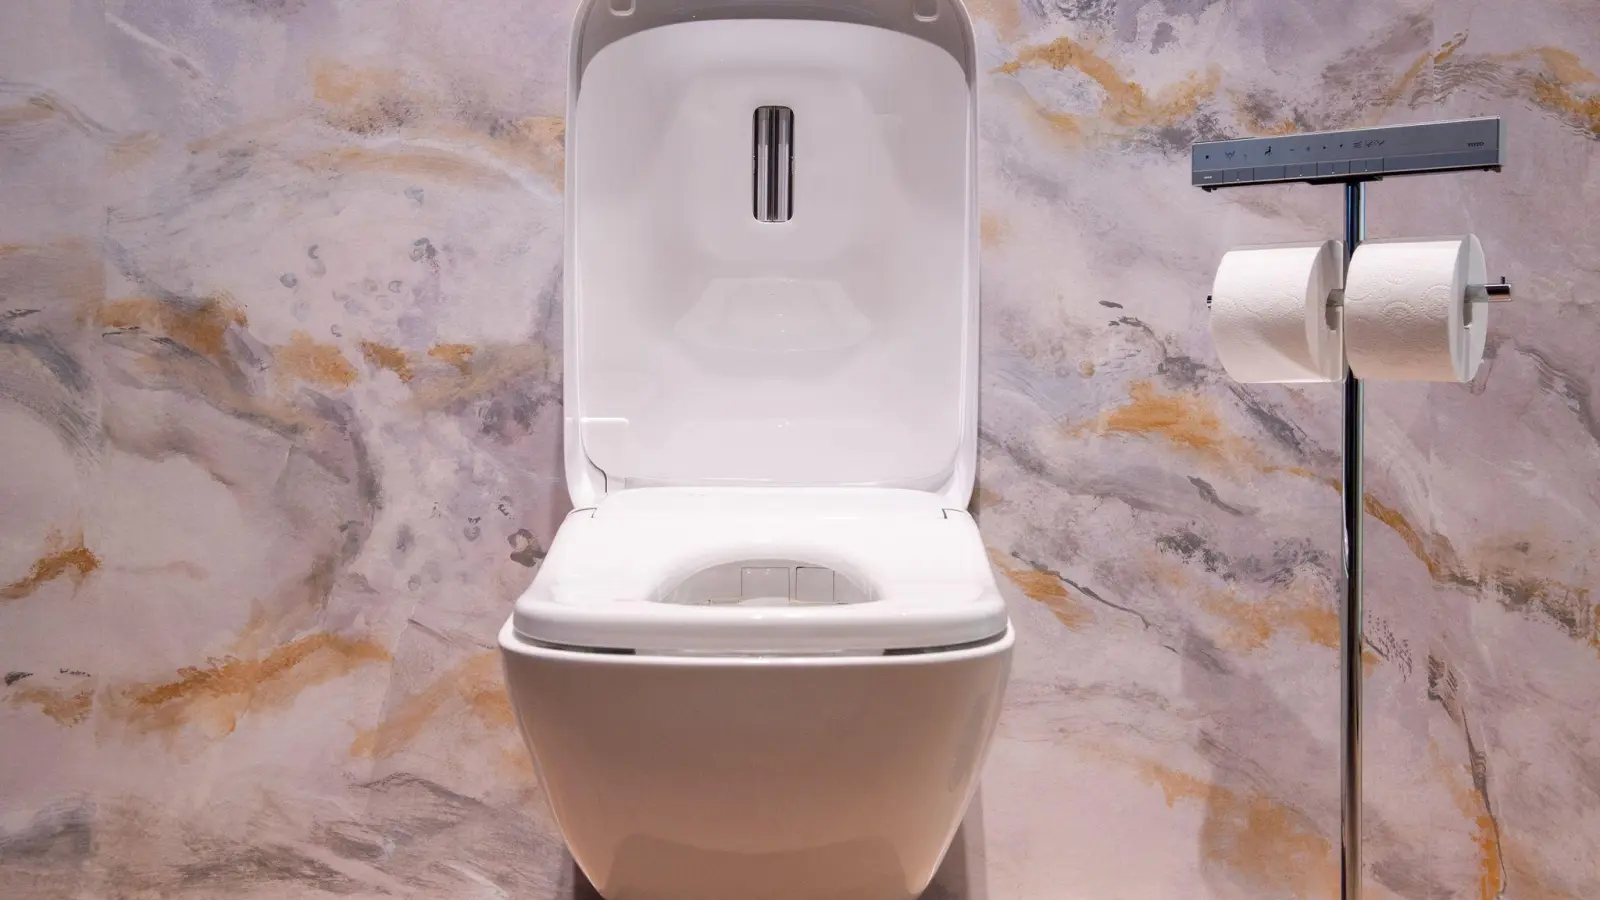 Ein Ort, an dem es sich verweilen lässt: Moderne Toiletten wollen mehr Komfort bieten, so auch dieser Prototyp Neorest WX von Toto. (Foto: Franziska Gabbert/dpa-tmn)